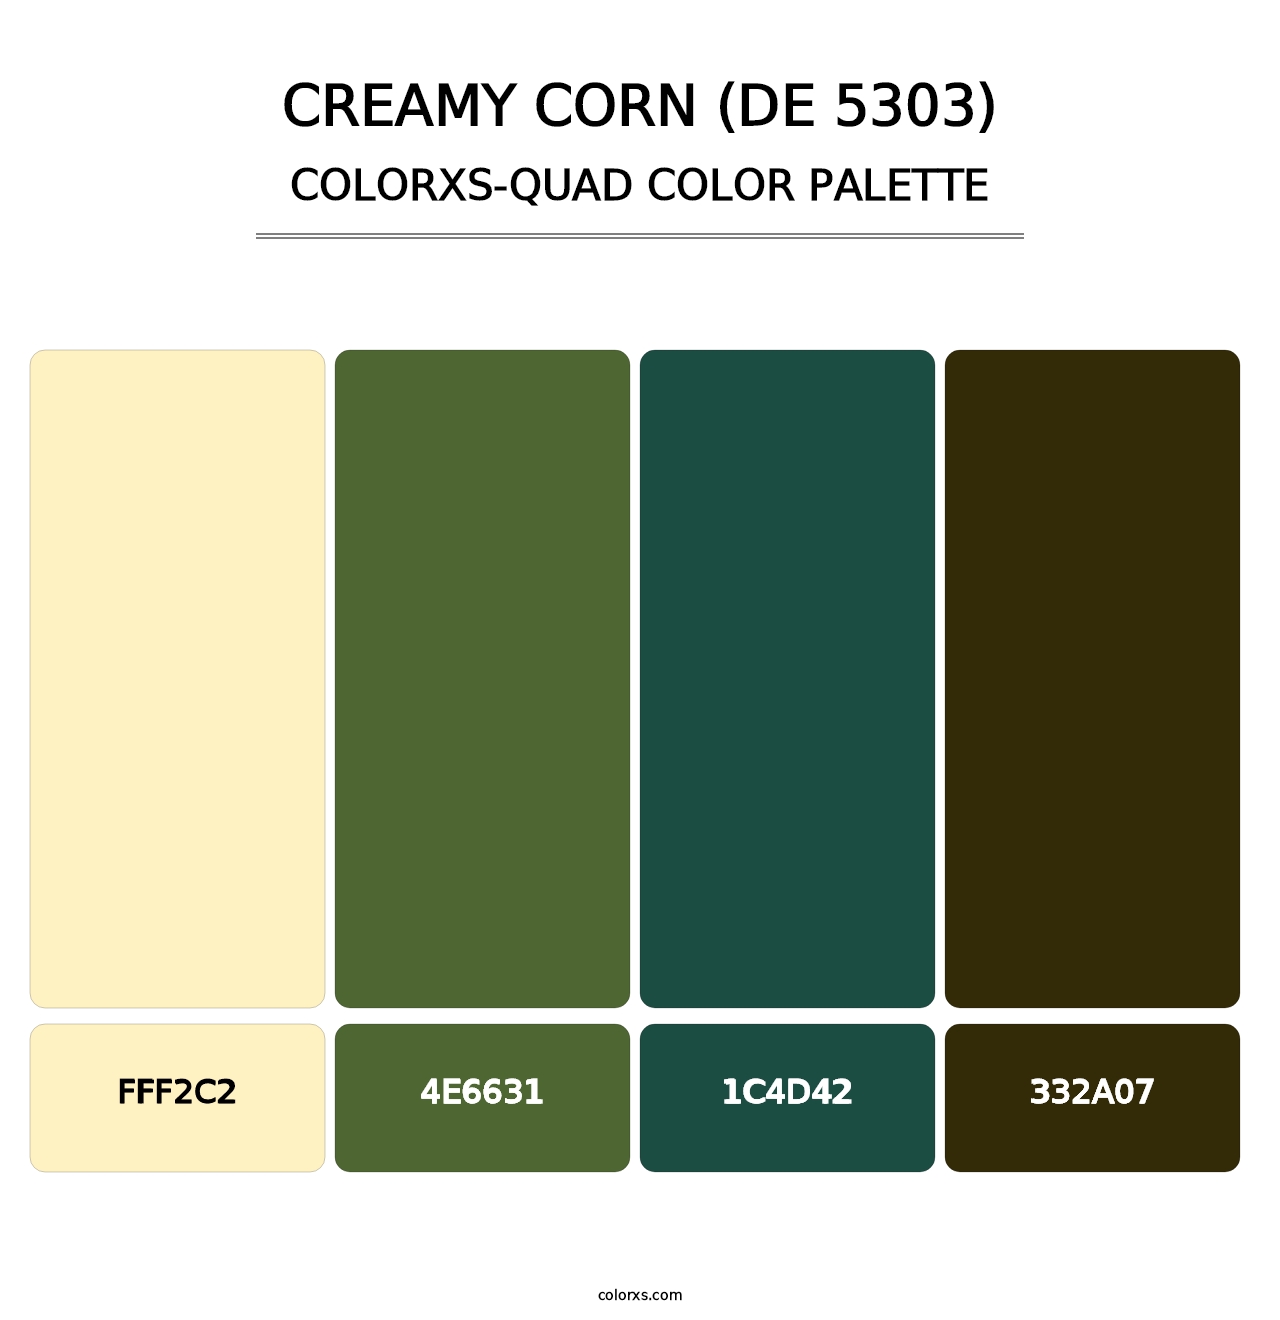 Creamy Corn (DE 5303) - Colorxs Quad Palette